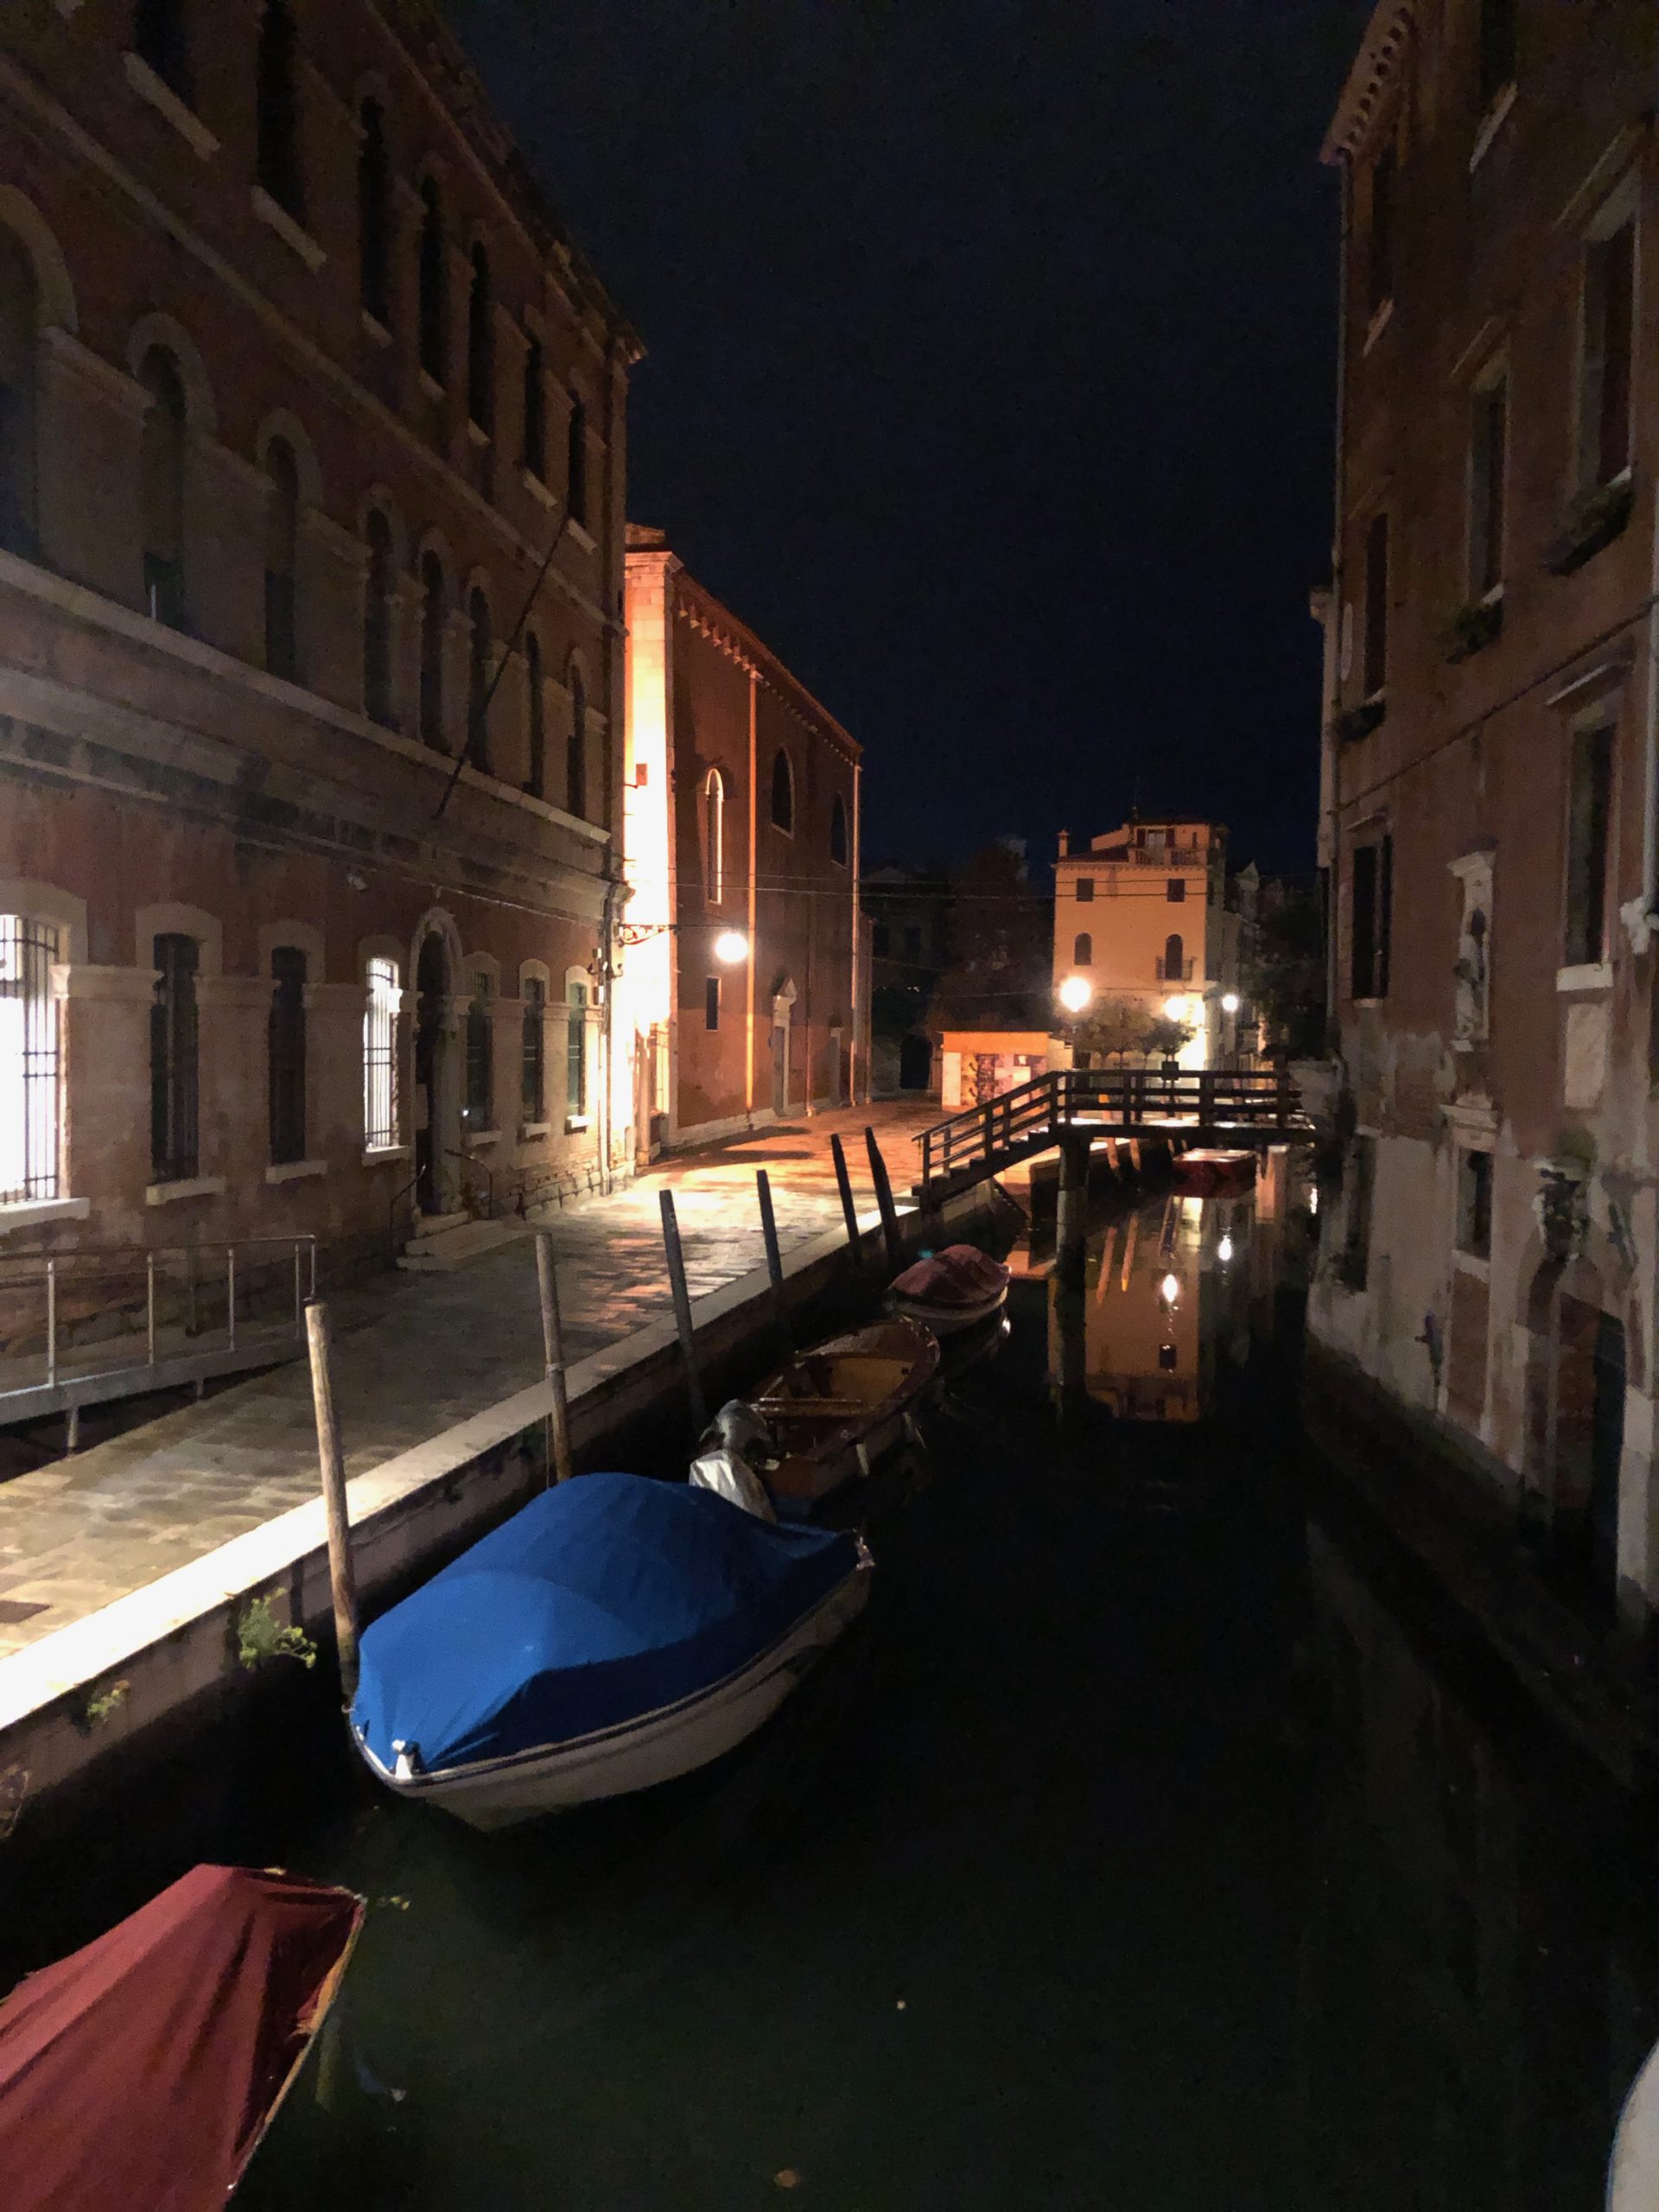 4 jours de vélo en Italie - De Venise à Trieste - Venise de nuit